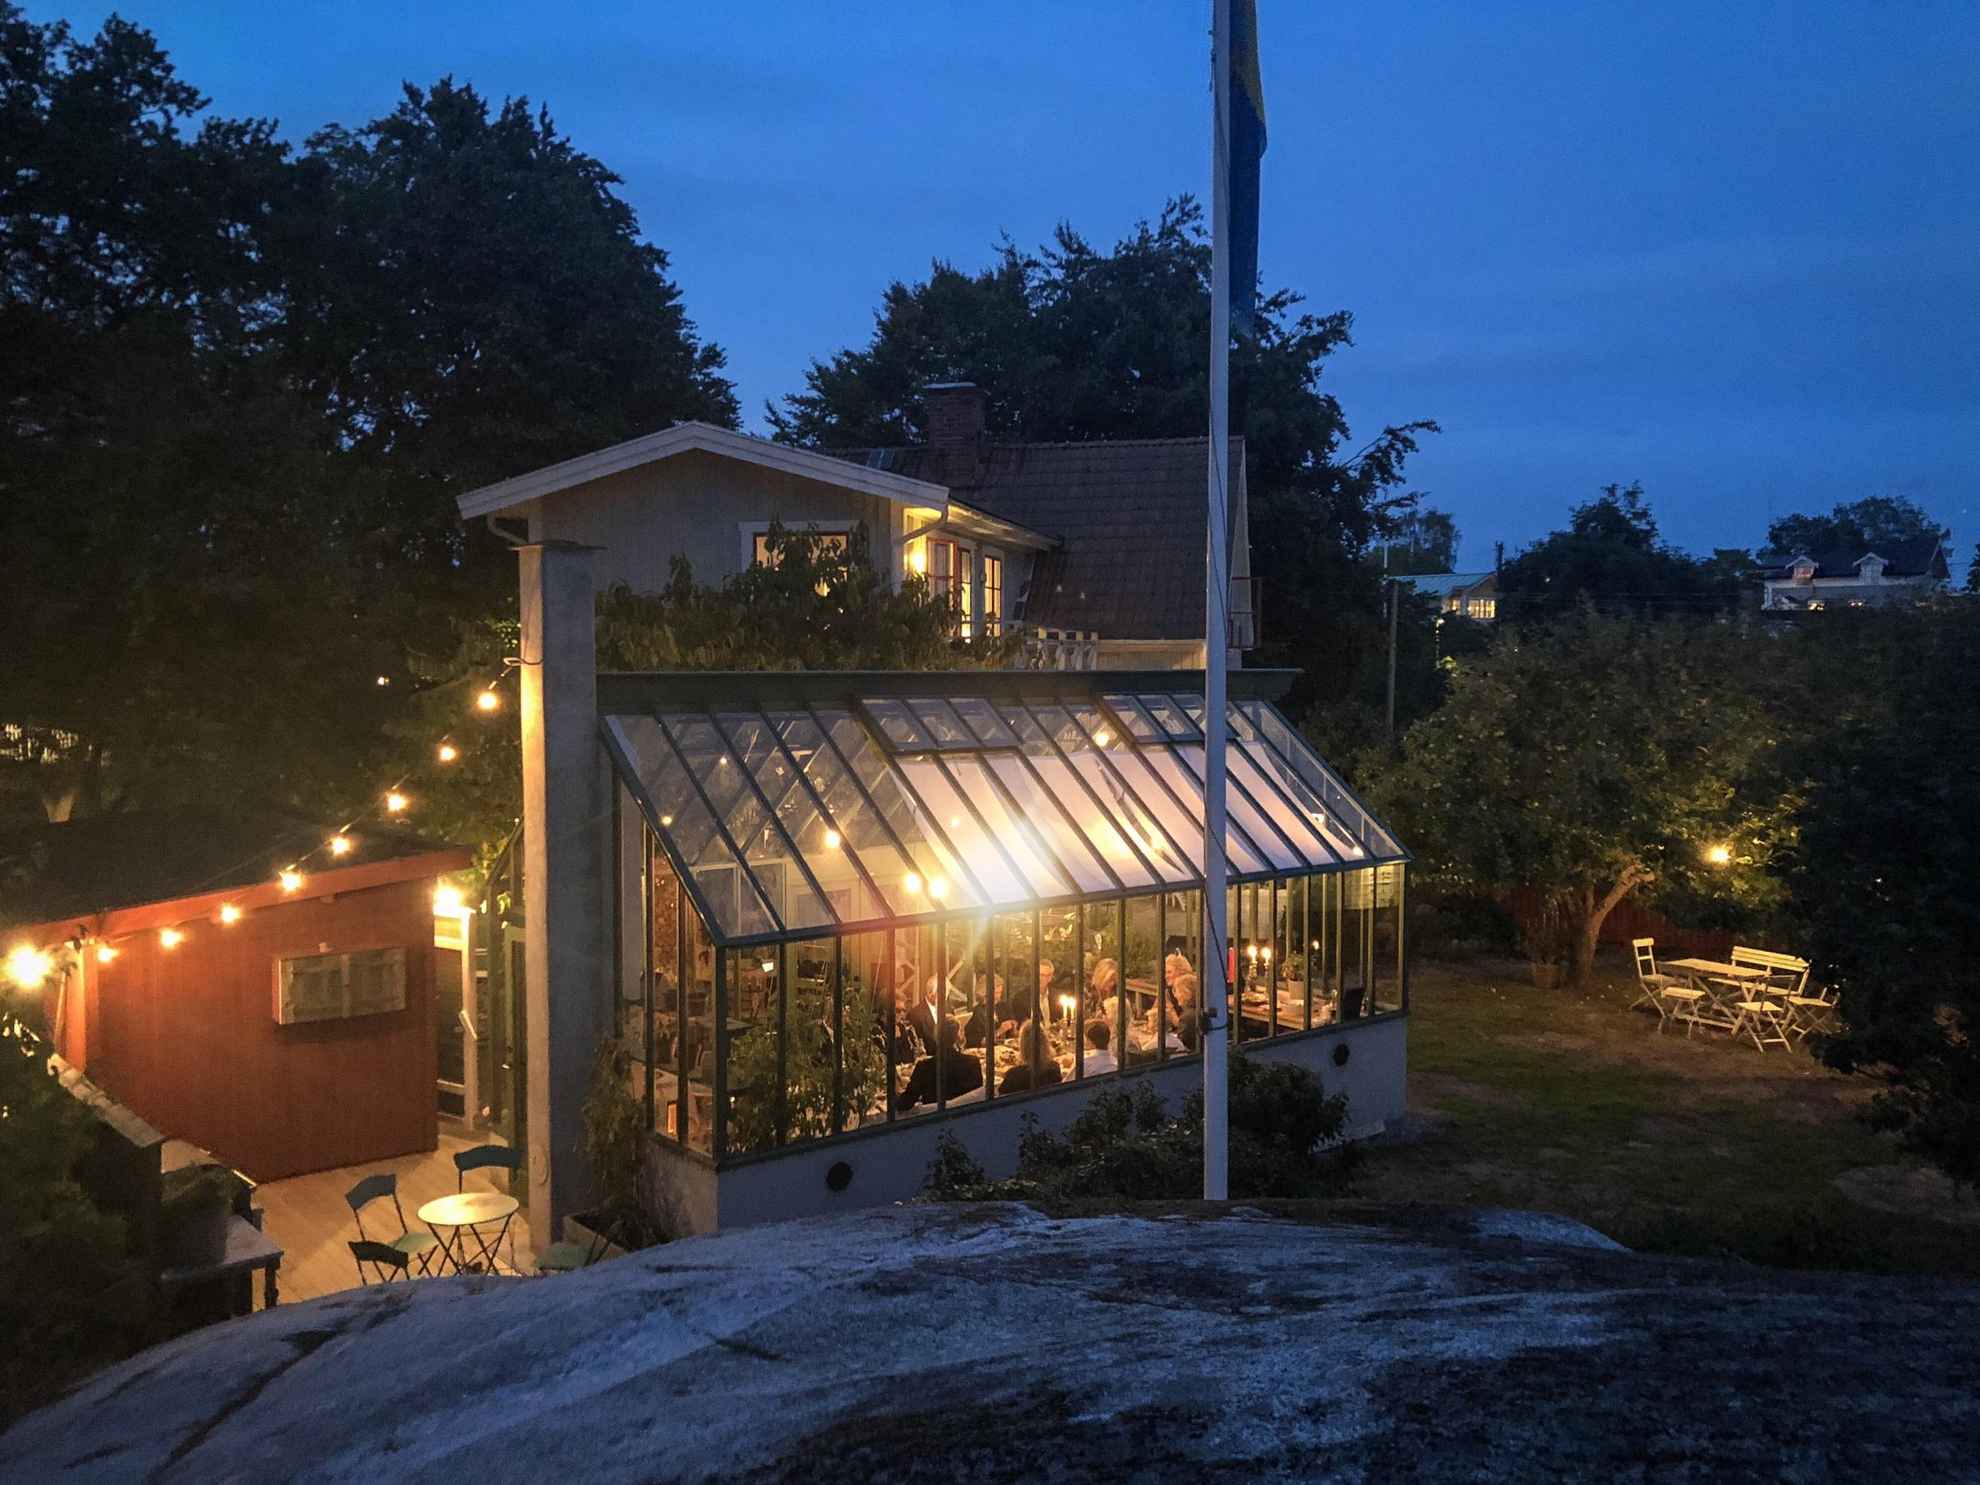 Ein Restaurant in einem schicken Gartenhaus. Es ist Abend und zahlreiche Lichterketten sorgen für eine gemütliche Atmosphäre.